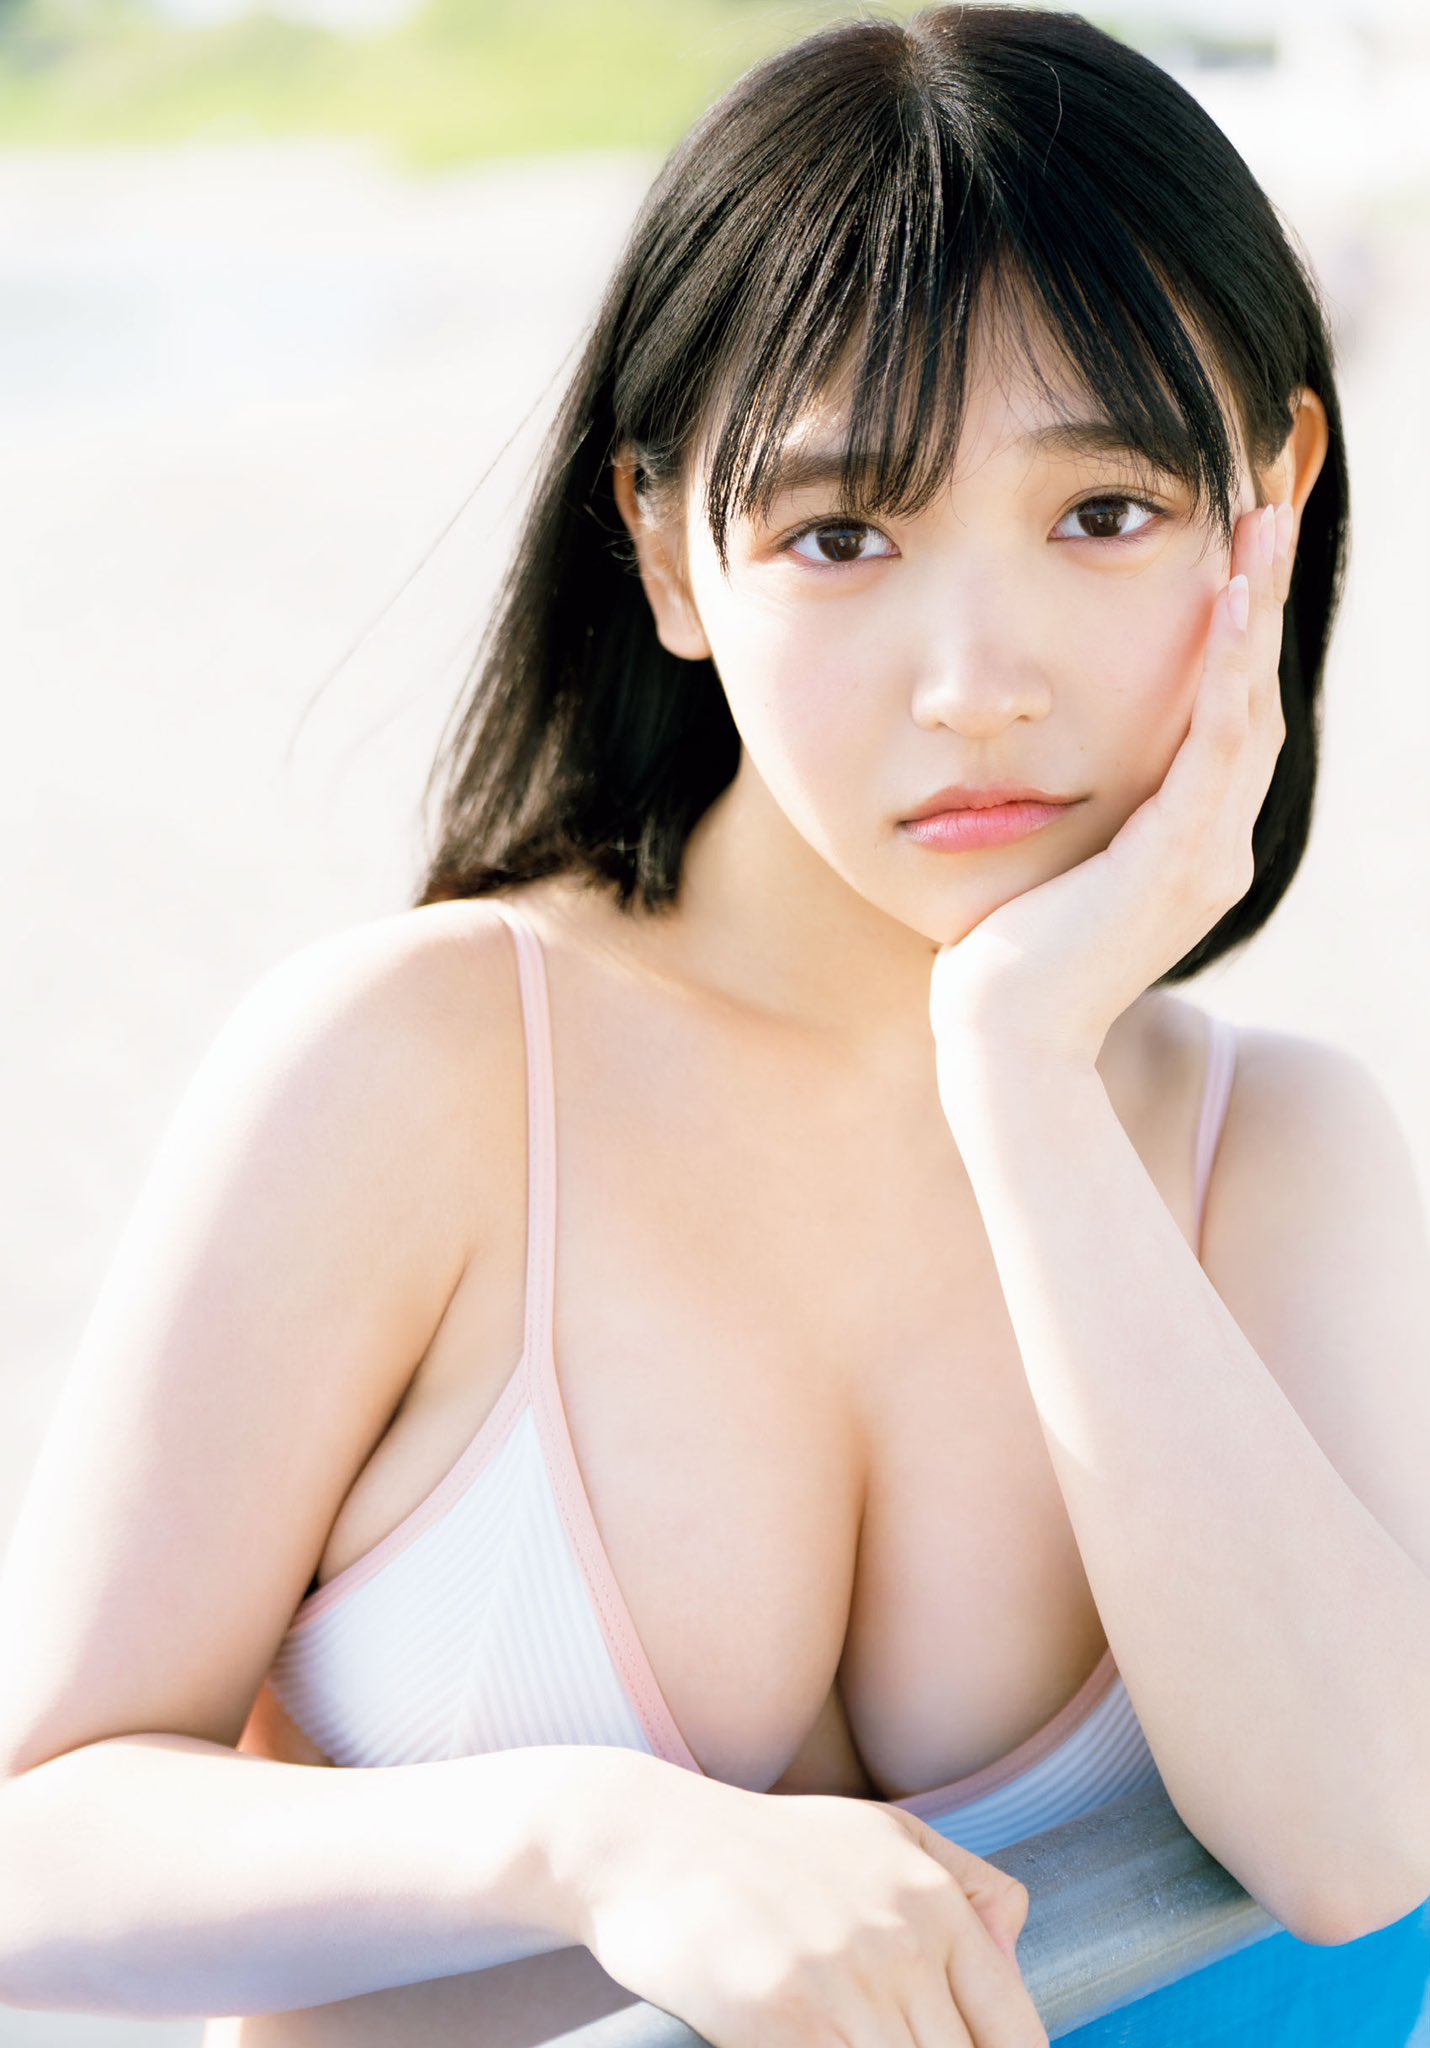 일본 2005년생 신인 그라비아 모델 키우치 노아